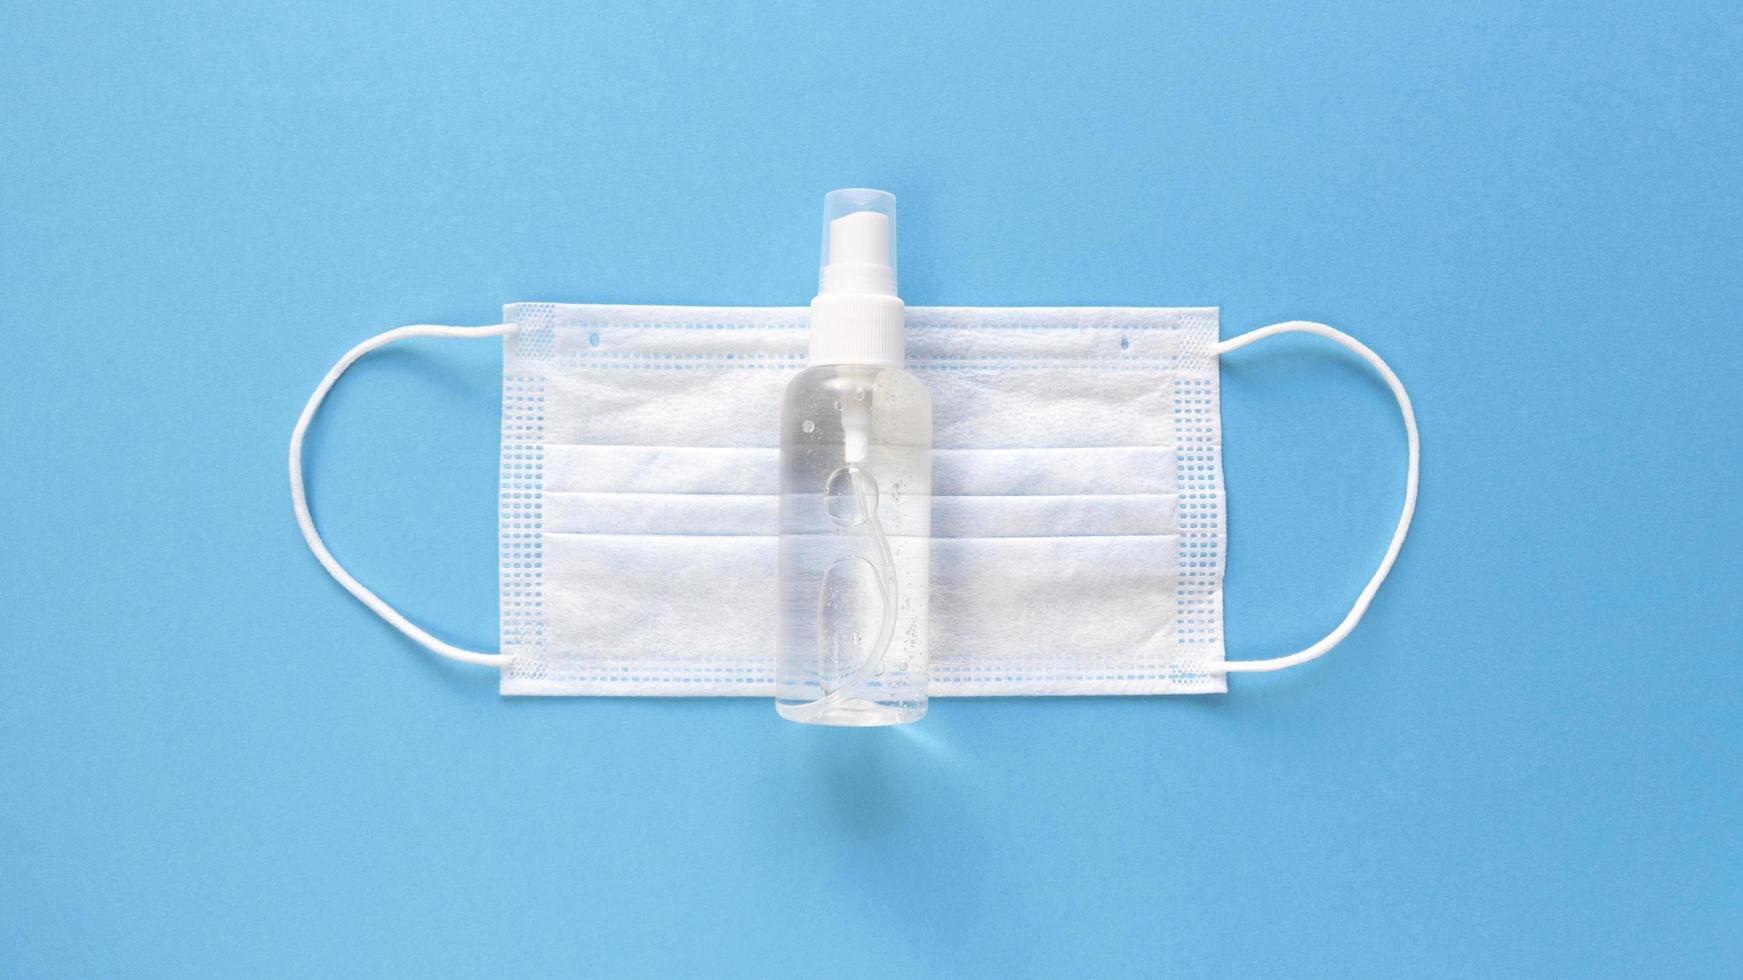 Mascarilla médica blanca y desinfectante de manos en una botella transparente con una tapa de spray en el medio de un fondo azul, plano simple con textura de papel pastel concepto médico foto